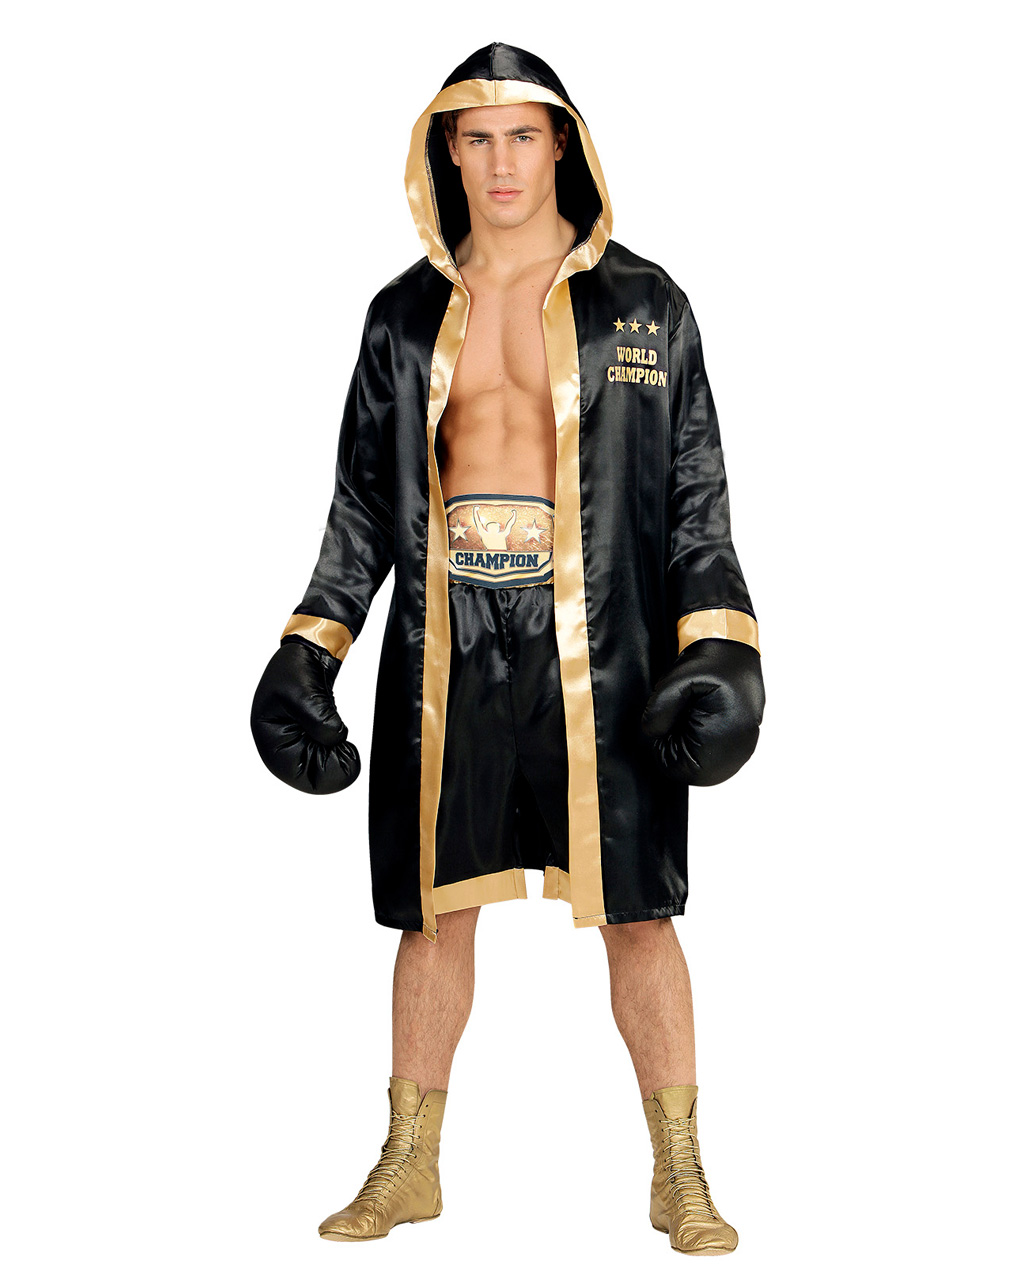 World Champion Boxer Kostüm für Karneval & Fasching XL